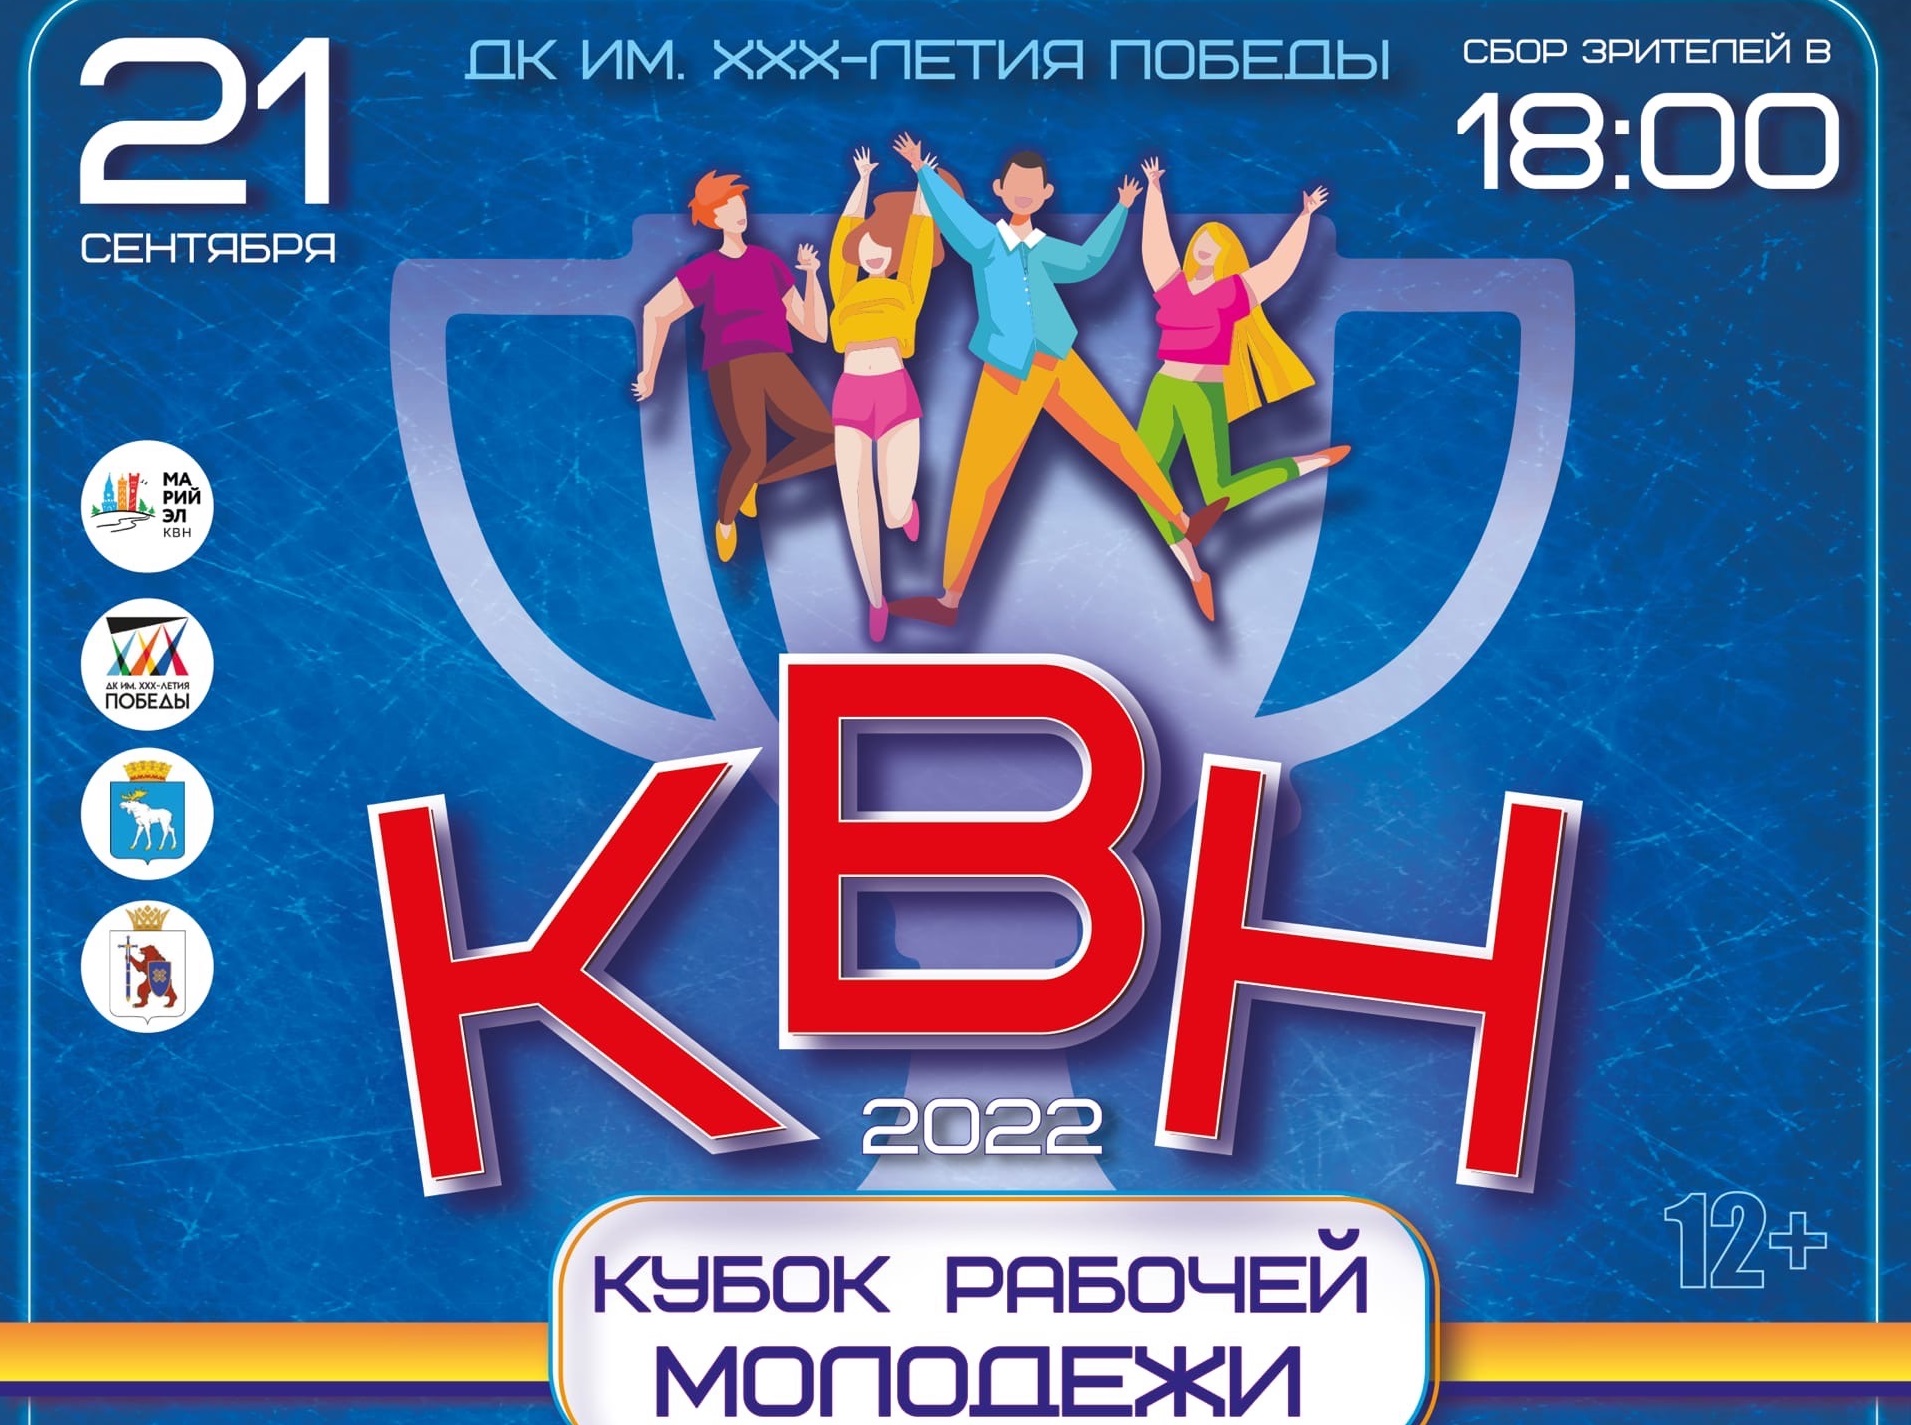 Кубок рабочей молодежи КВН состоится 21 сентября в Йошкар-Оле